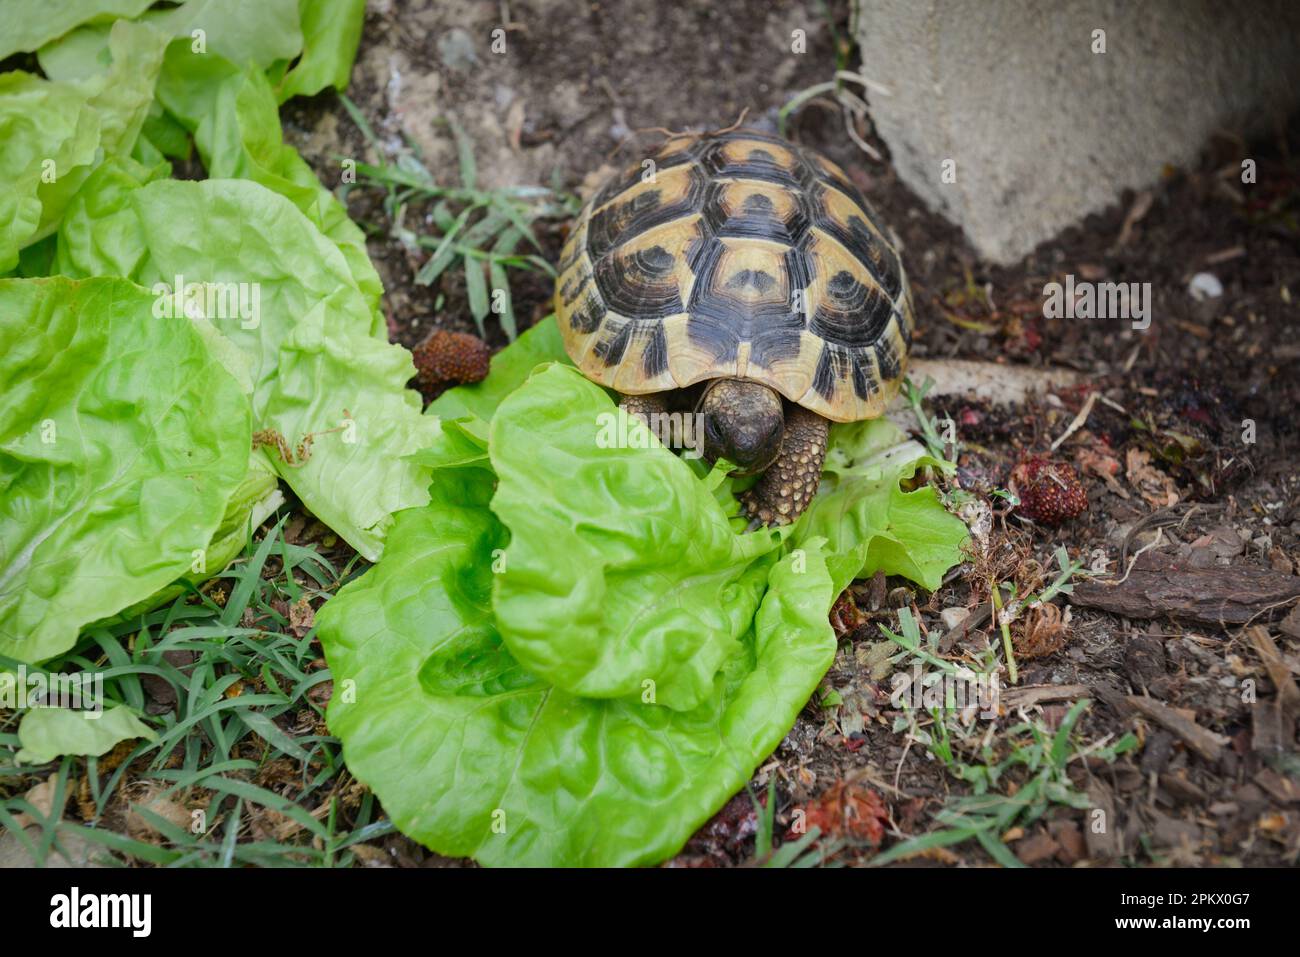 Eine Landschildkröte isst ein grünes Salatblatt, das größer ist als seine Größe Stockfoto